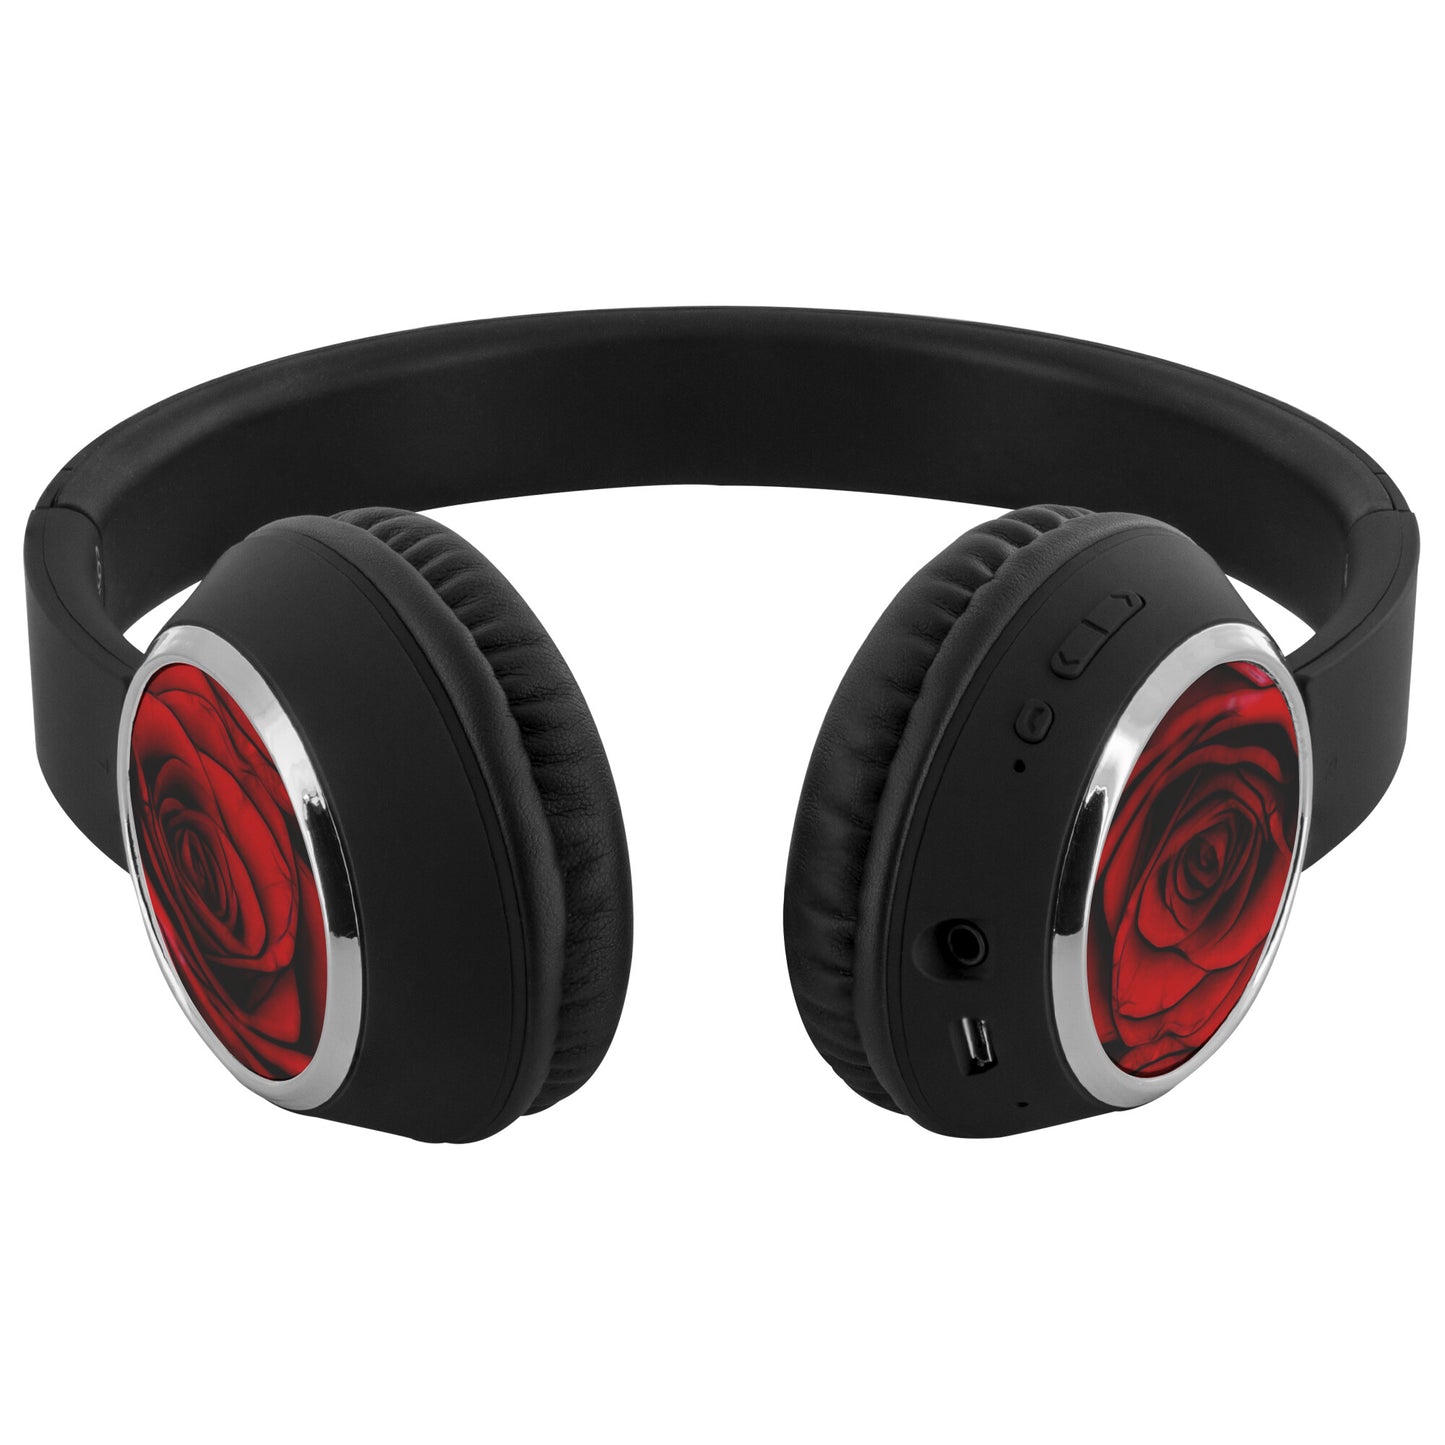 Reddest Rose Beebop Headphones